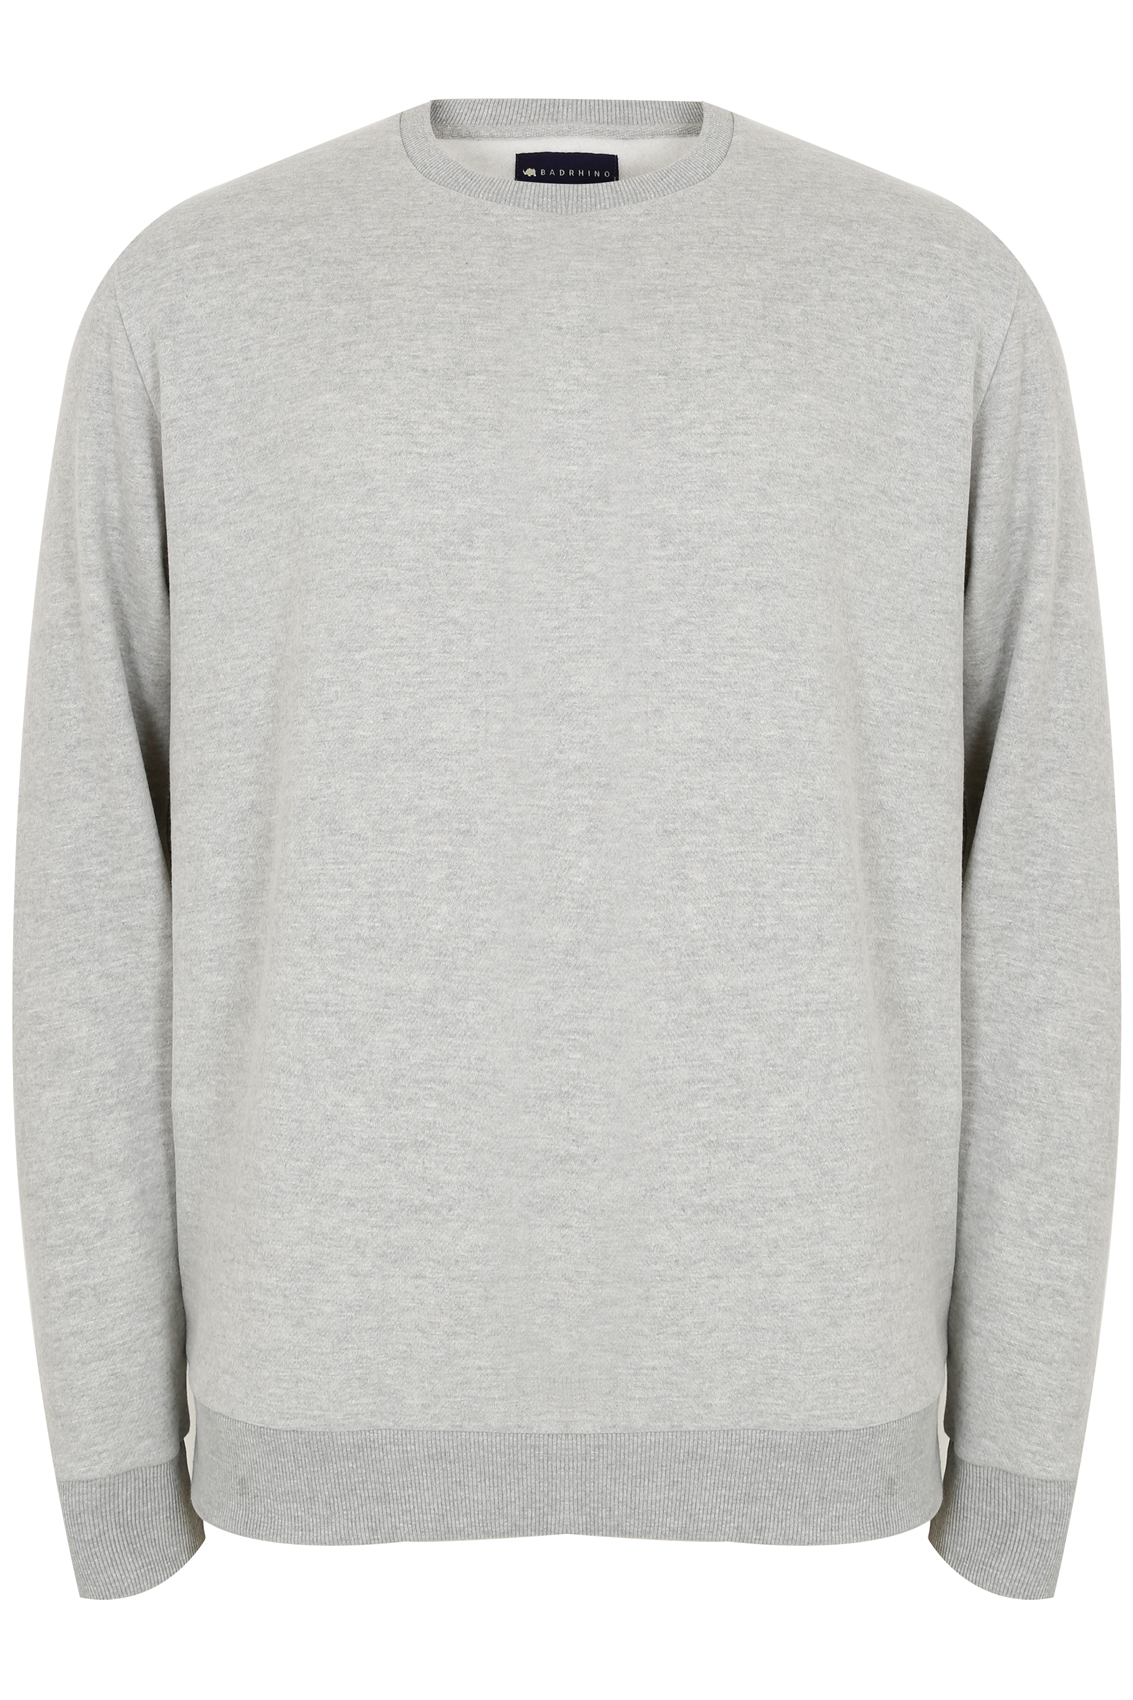 BadRhino Light Grey Marl Sweatshirt, Sizes: L,XL,2XL,3XL,4XL,5XL,6XL ...